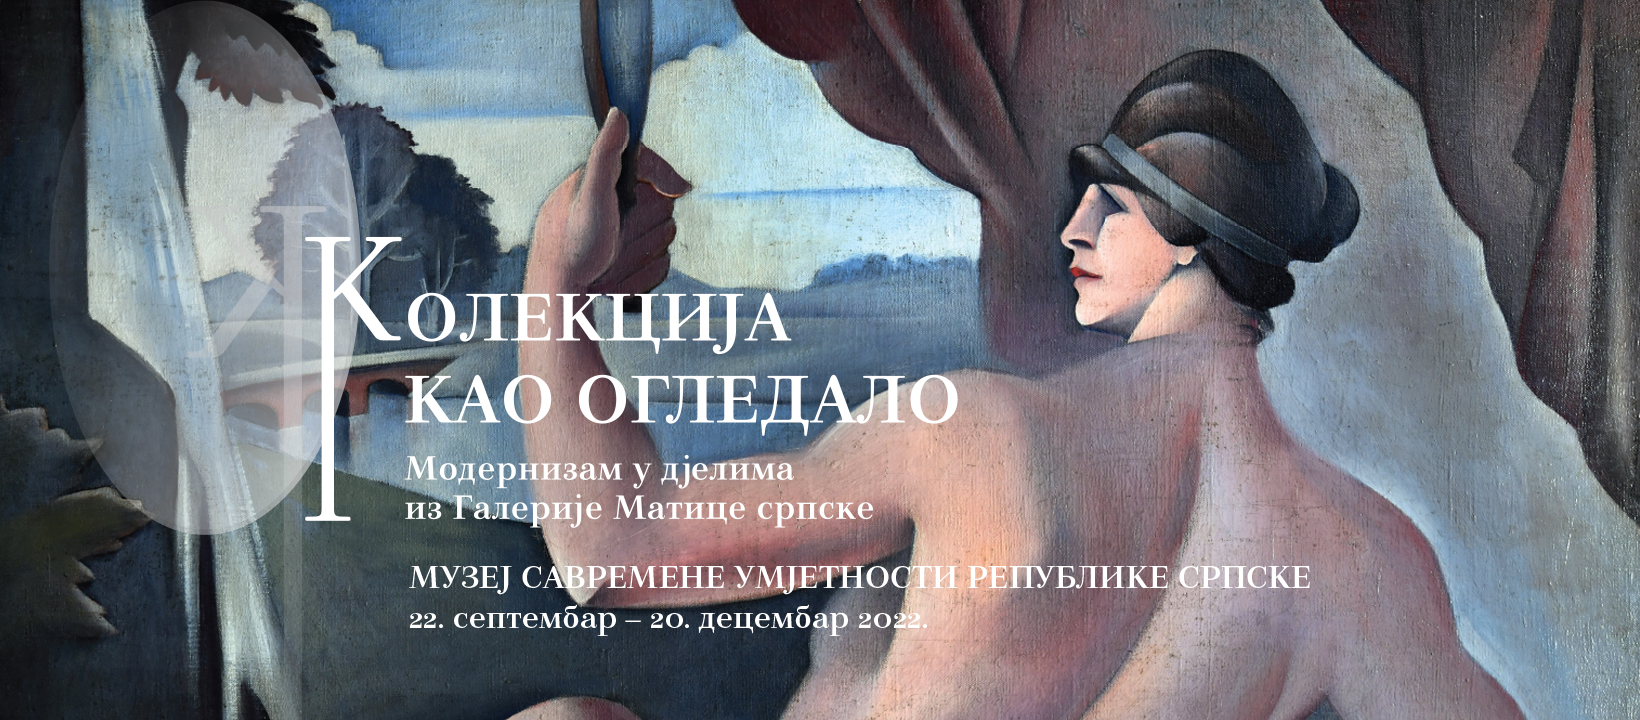 Poziv na svečano otvaranje izložbe djela iz Galerije Matice srpske 22. septembra